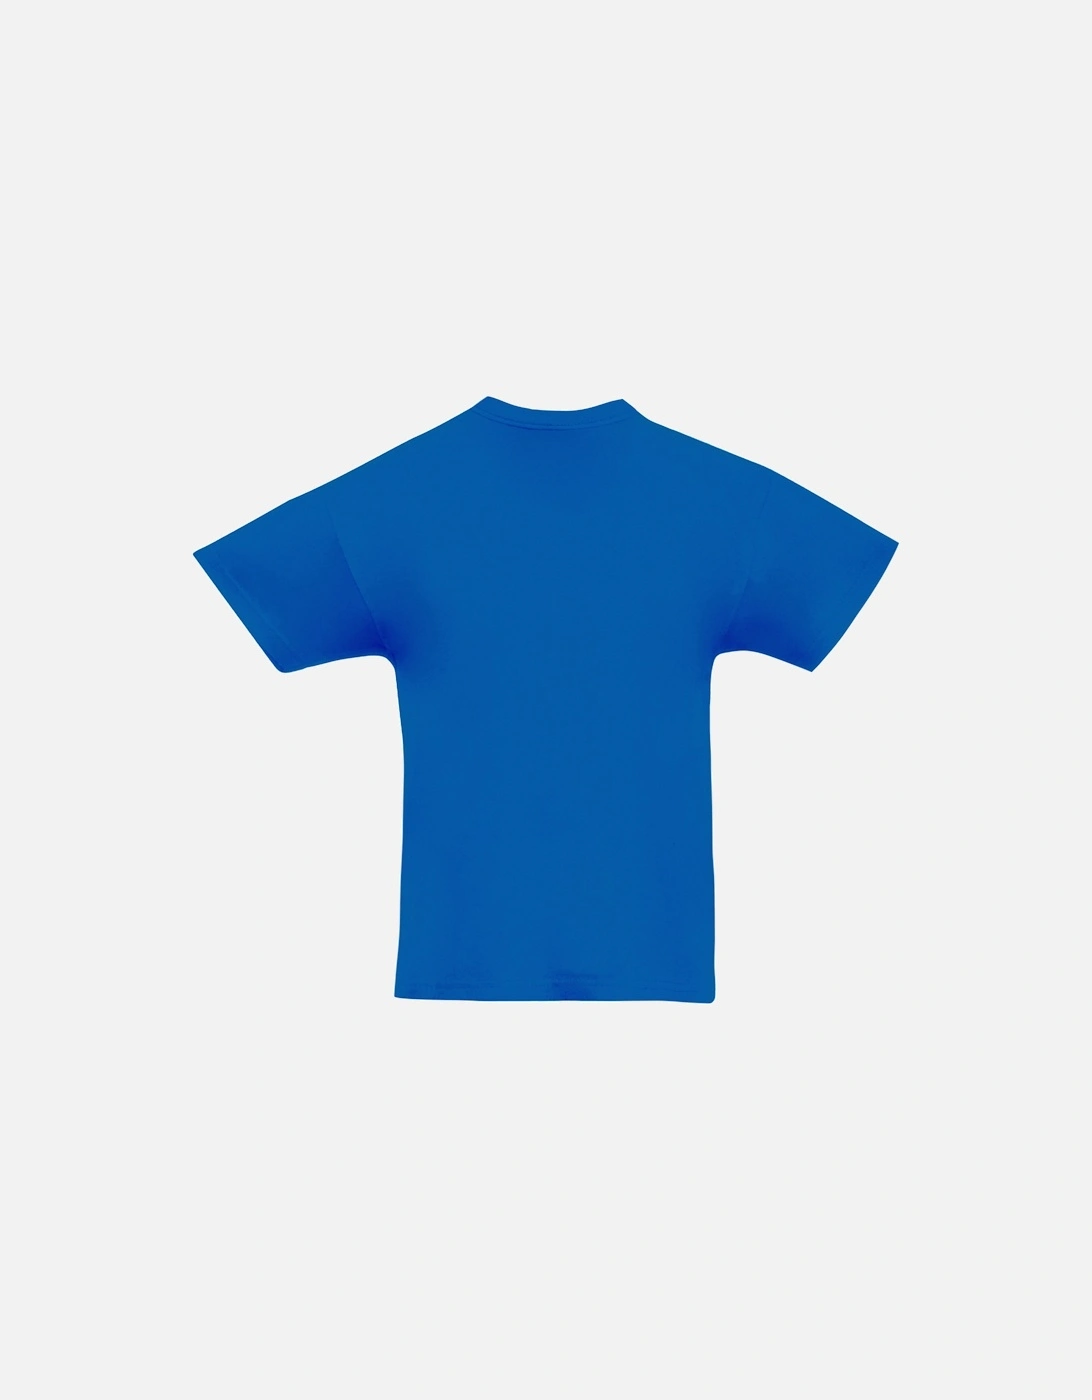 Childrens/Teens Original Short Sleeve T-Shirt